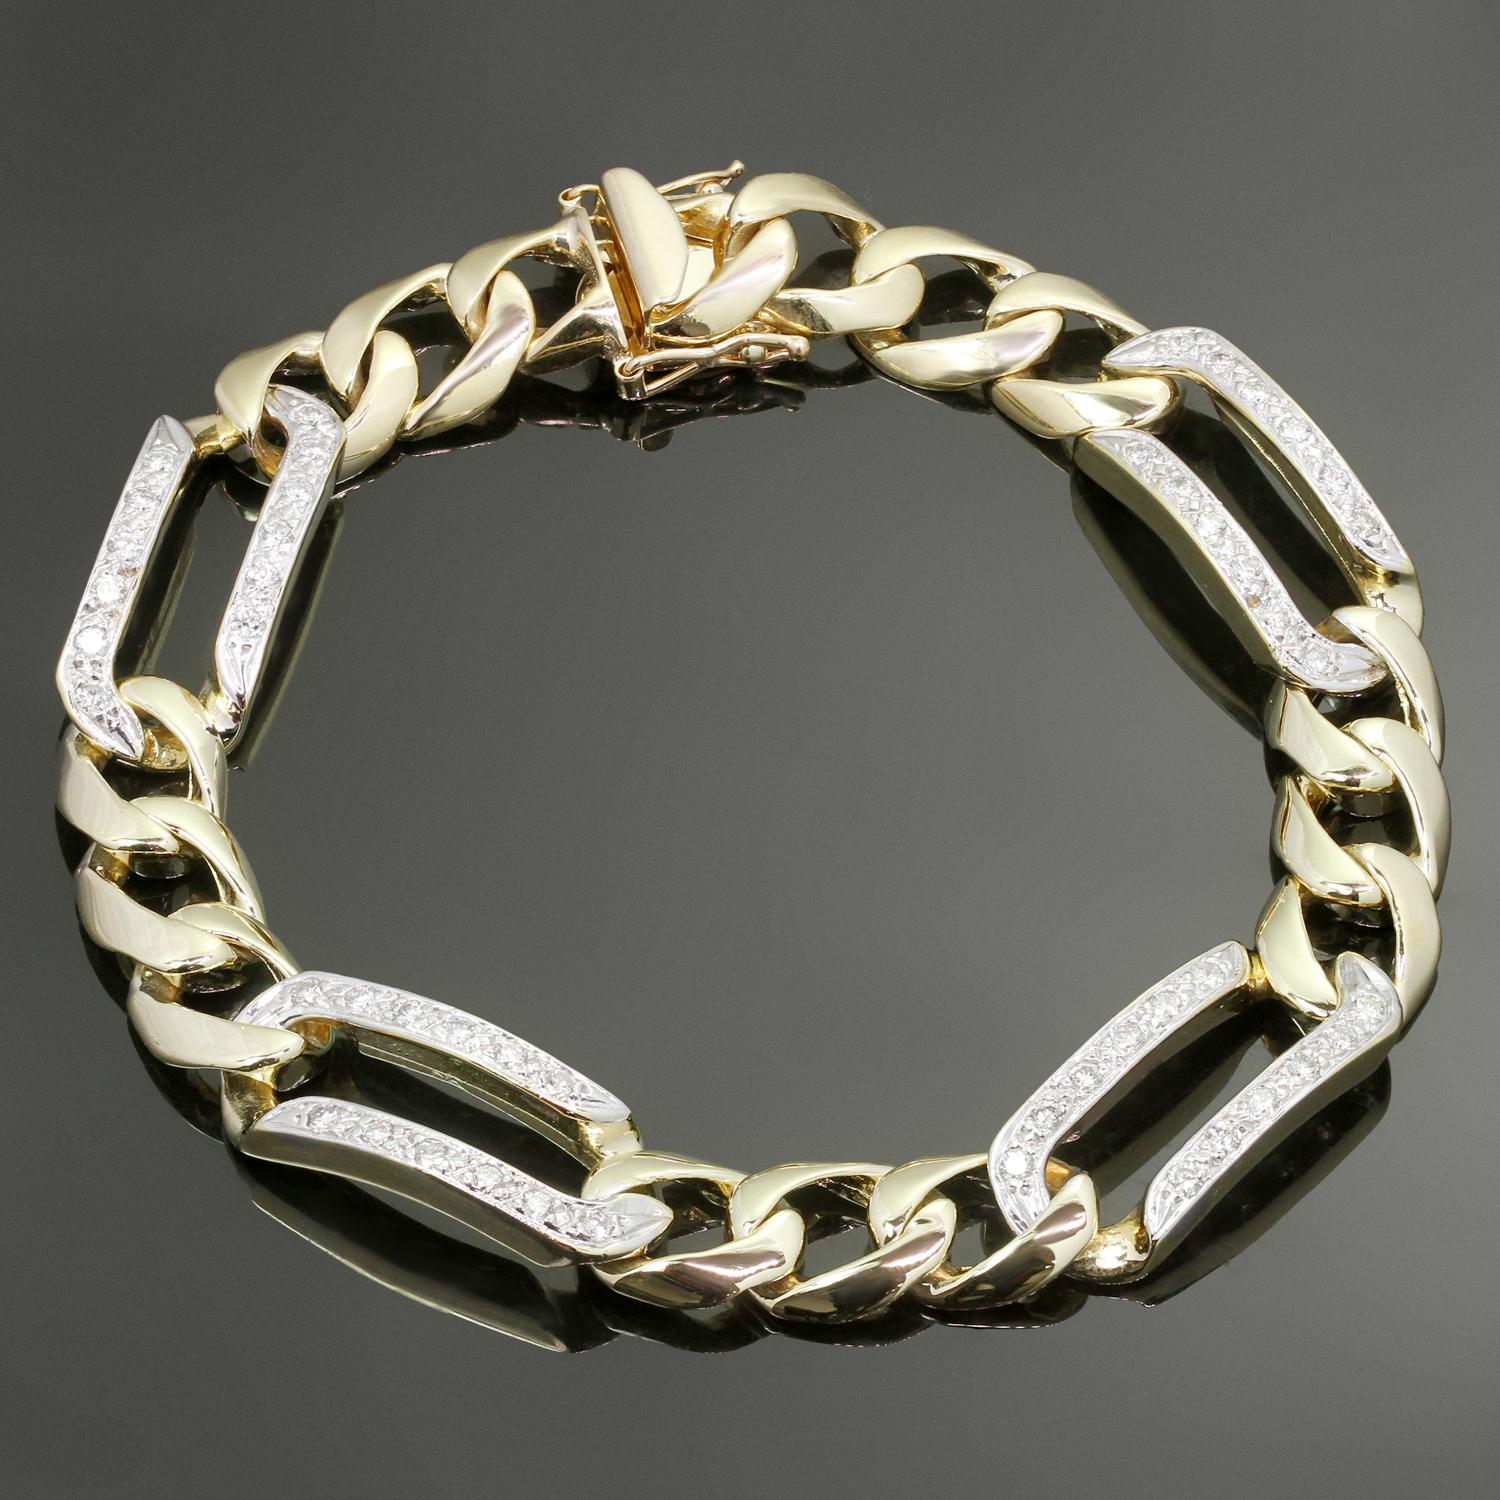 Ce bracelet à maillons classique pour homme est fabriqué en or jaune 14 carats et serti de diamants ronds H VS2-SI1 taille brillant d'une valeur estimée à 1,50 carat. Fabriqué aux États-Unis dans les années 1990. Mesures : 0.11 mm de large, 21,5 cm